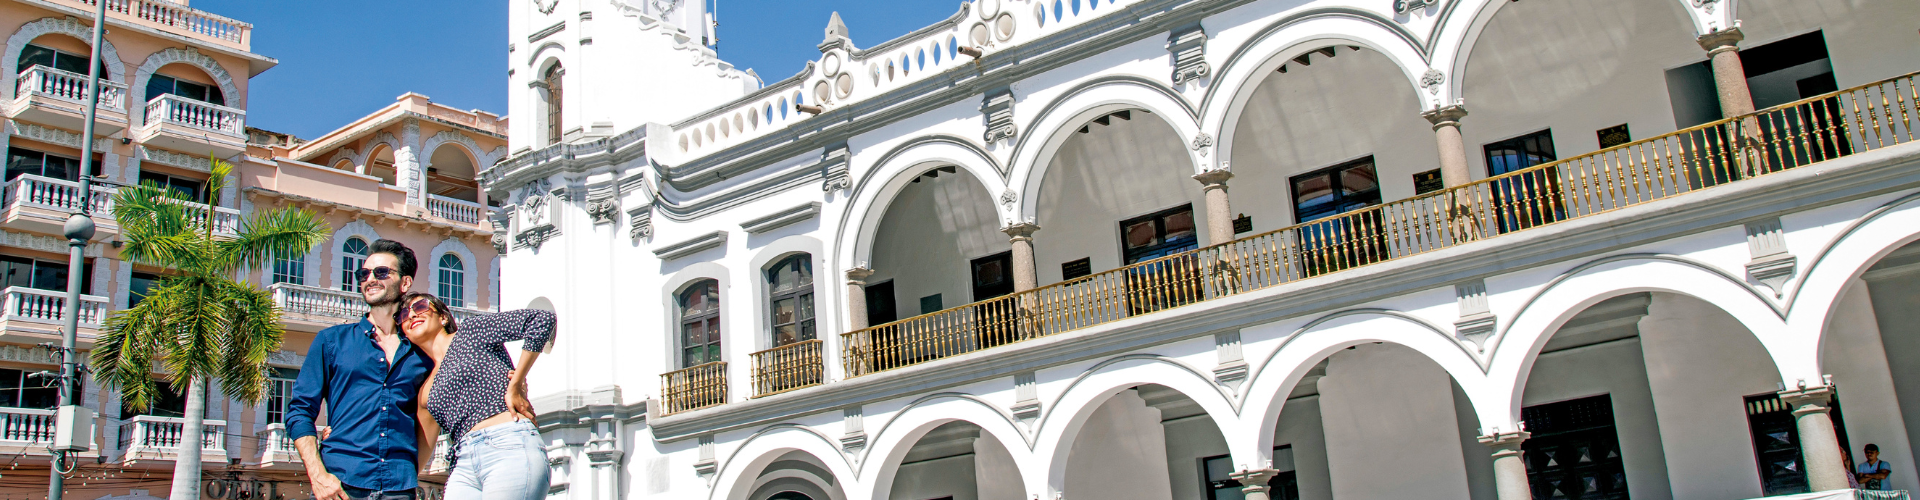 Ostar Grupo Hotelero - Veracruz - 